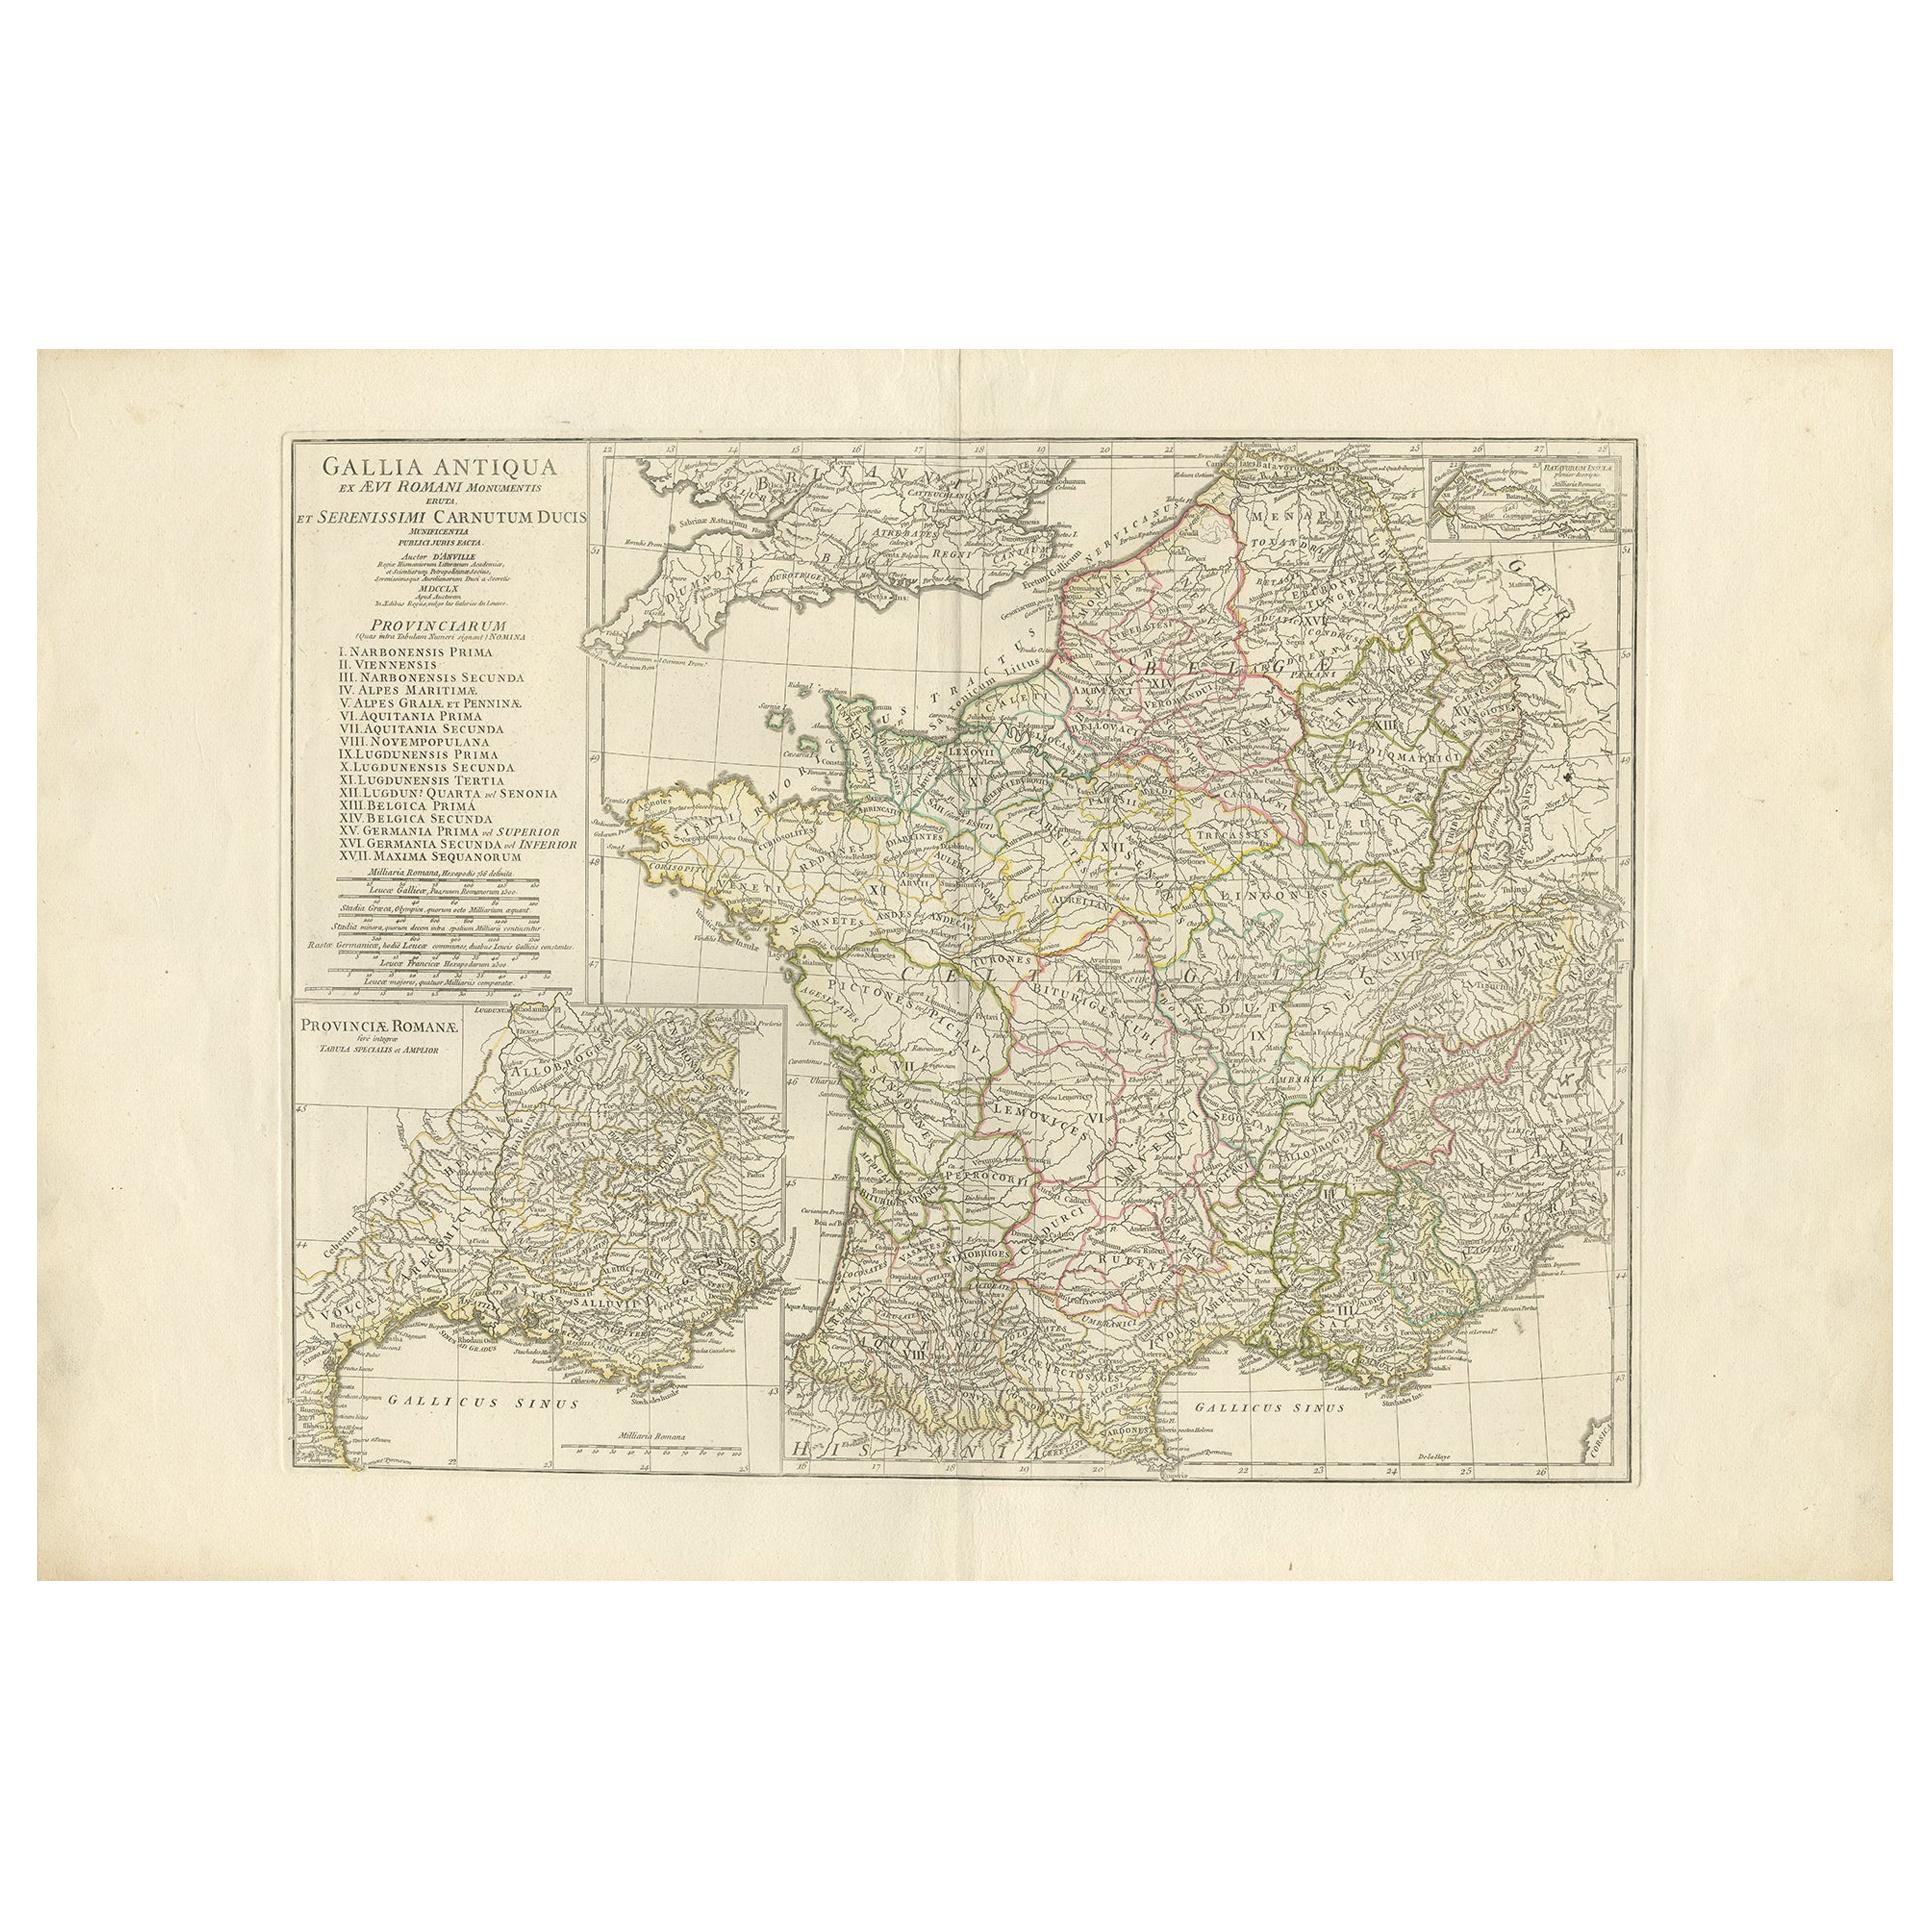 Carte ancienne de la France dans l'Antiquité romaine par d'Anville, vers 1795